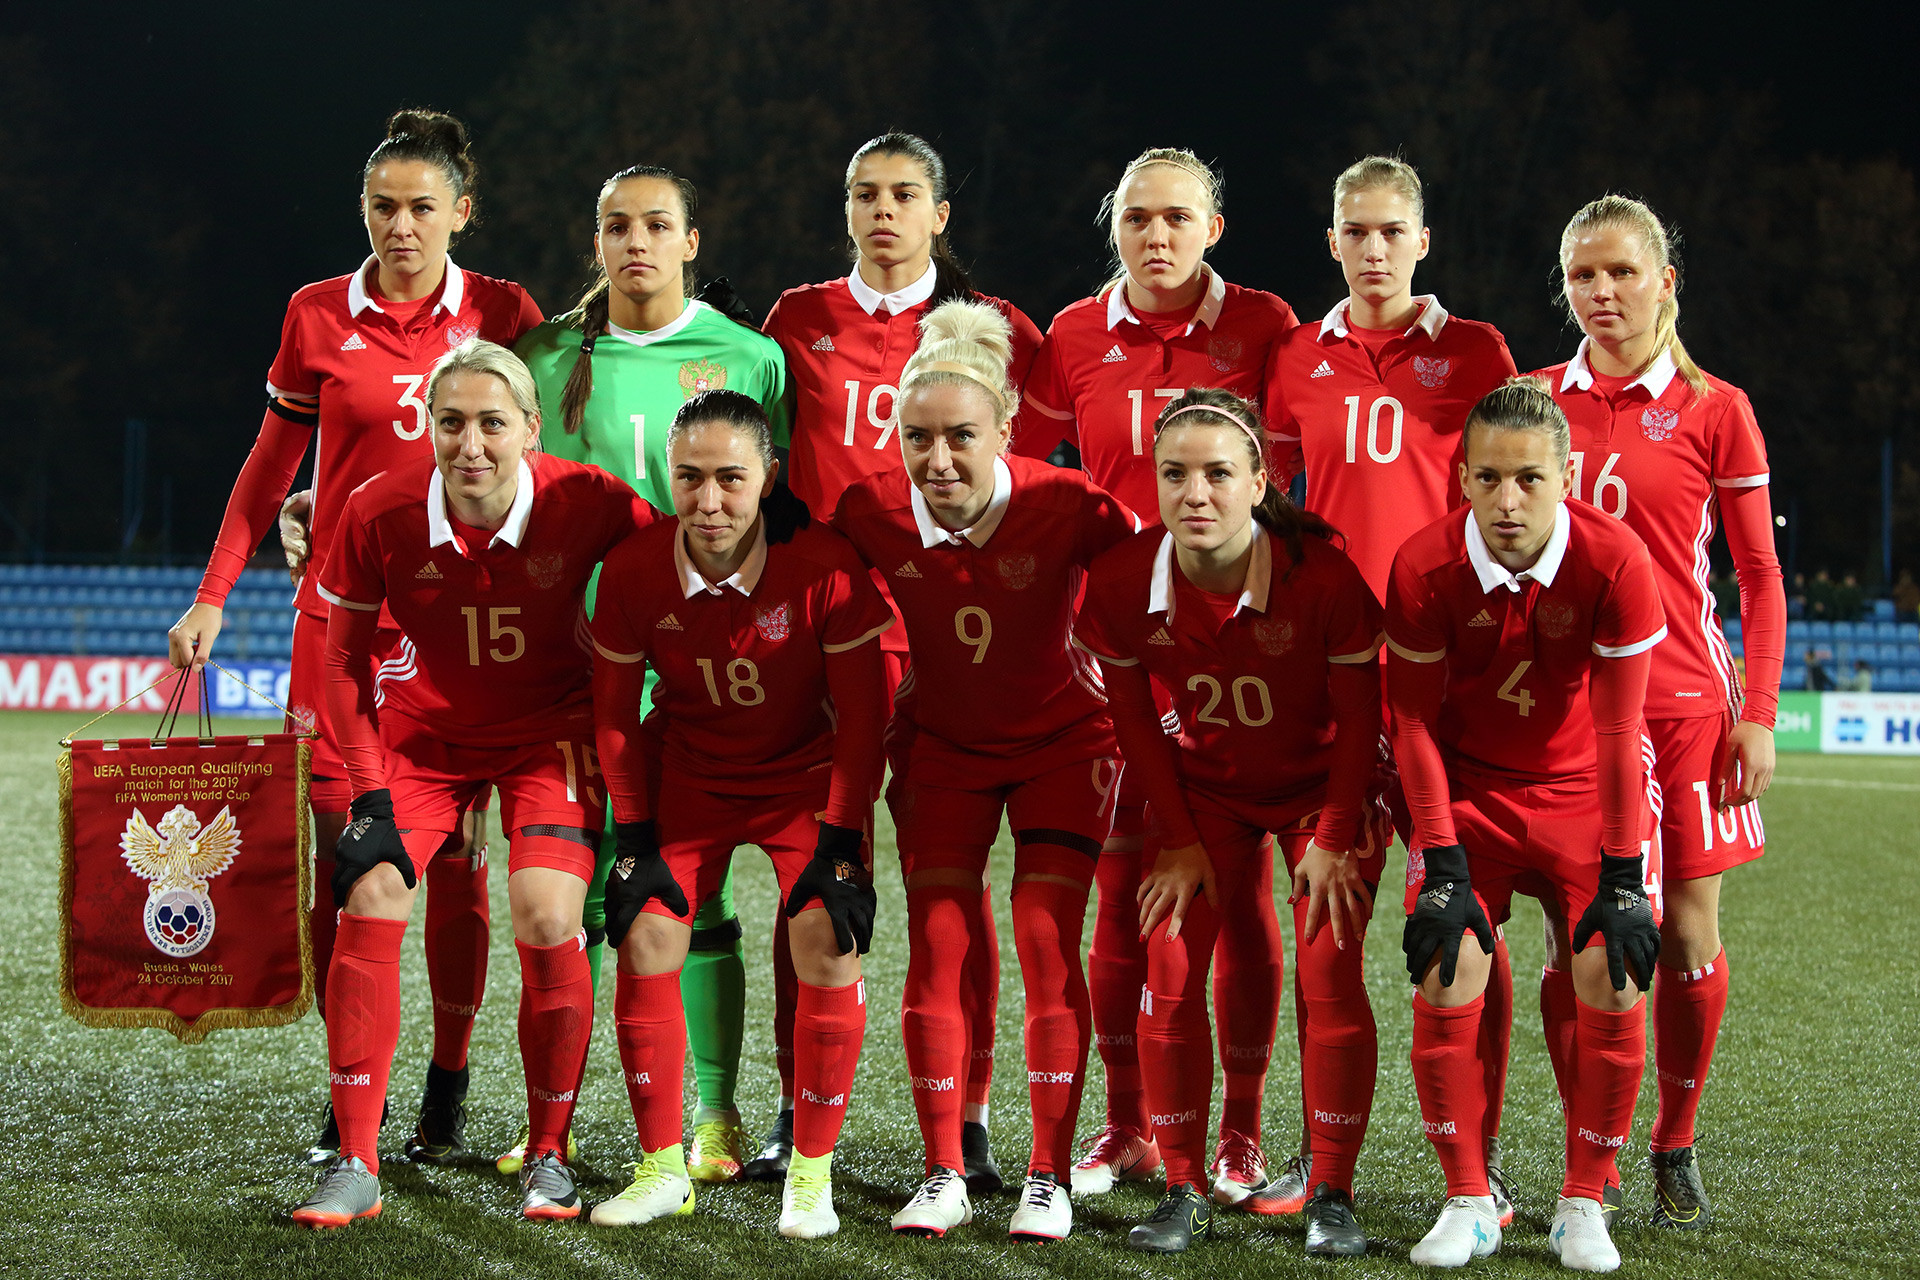 女子サッカーのナショナルチーム